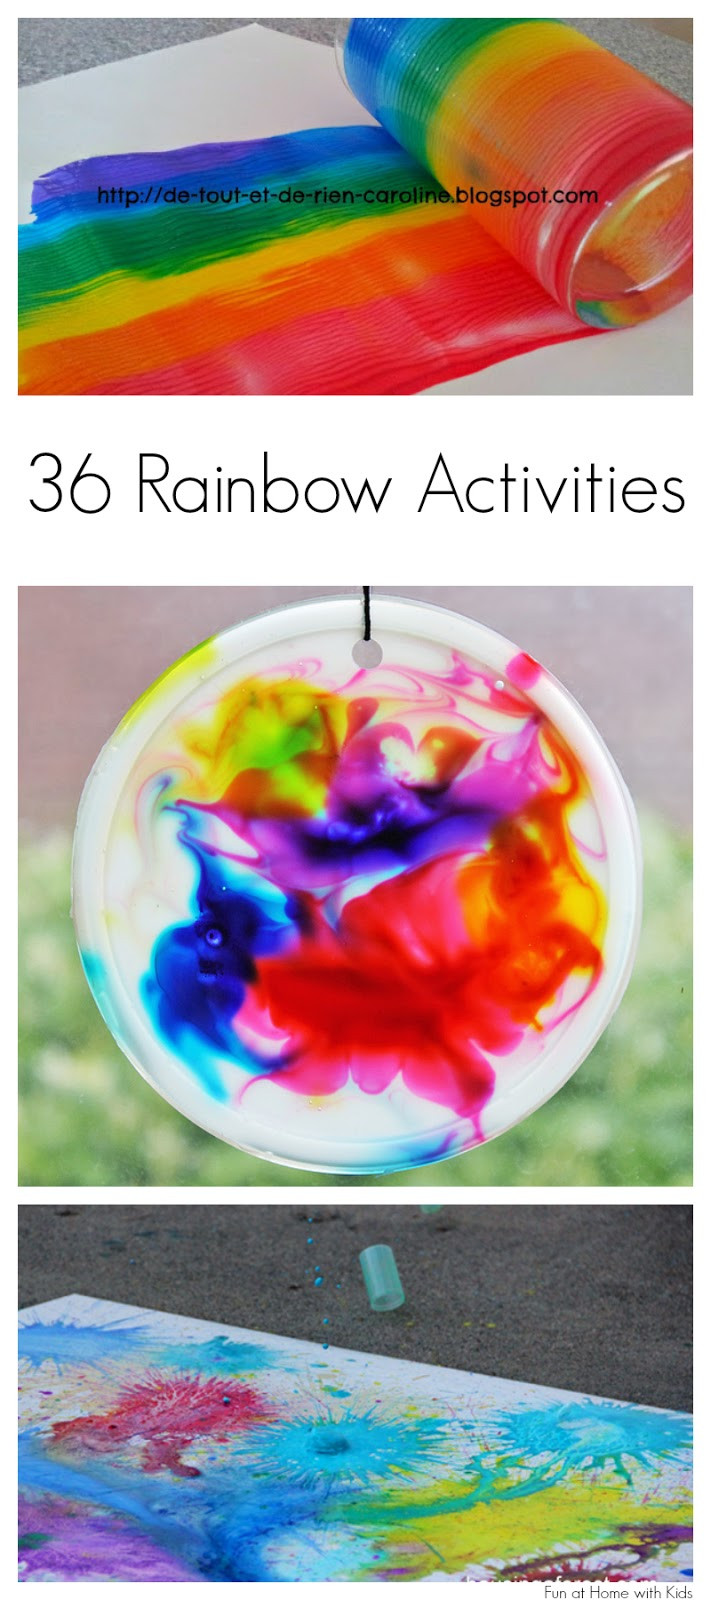 Rainbow Artwork For Preschoolers
 36 Rainbow Activities for Babies Toddlers Preschoolers